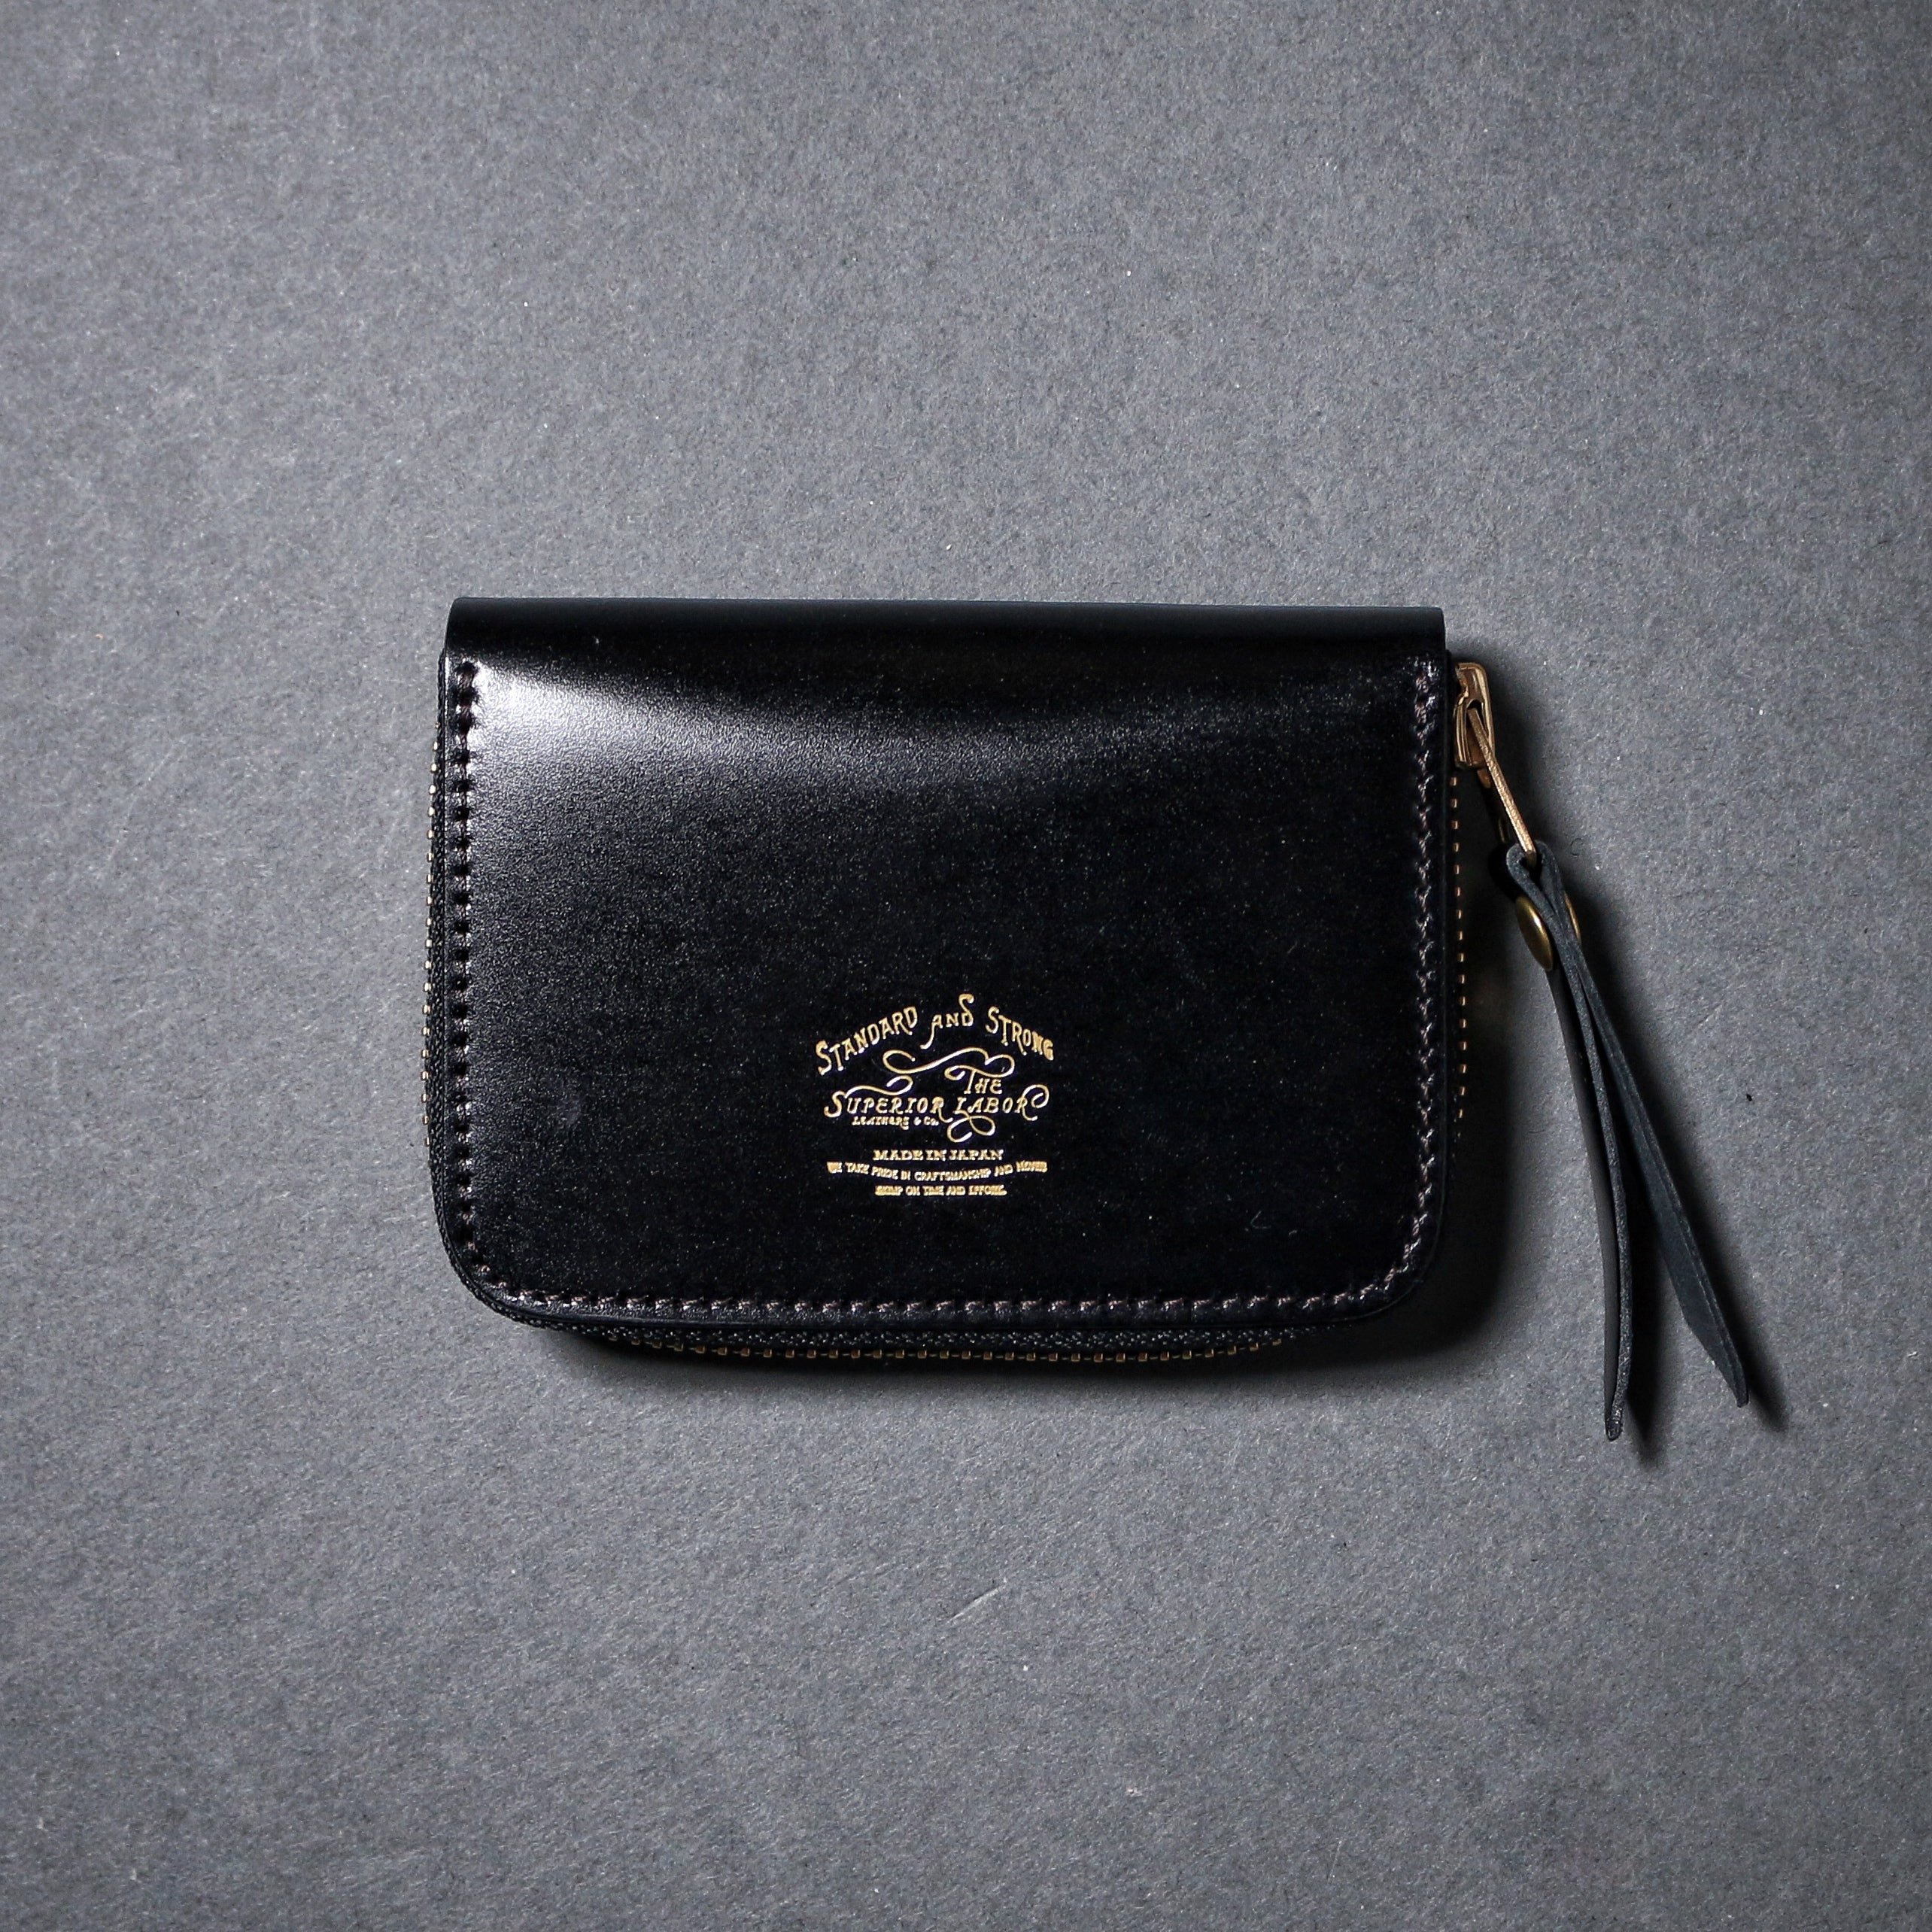 SL193 cordovan zip small wallet